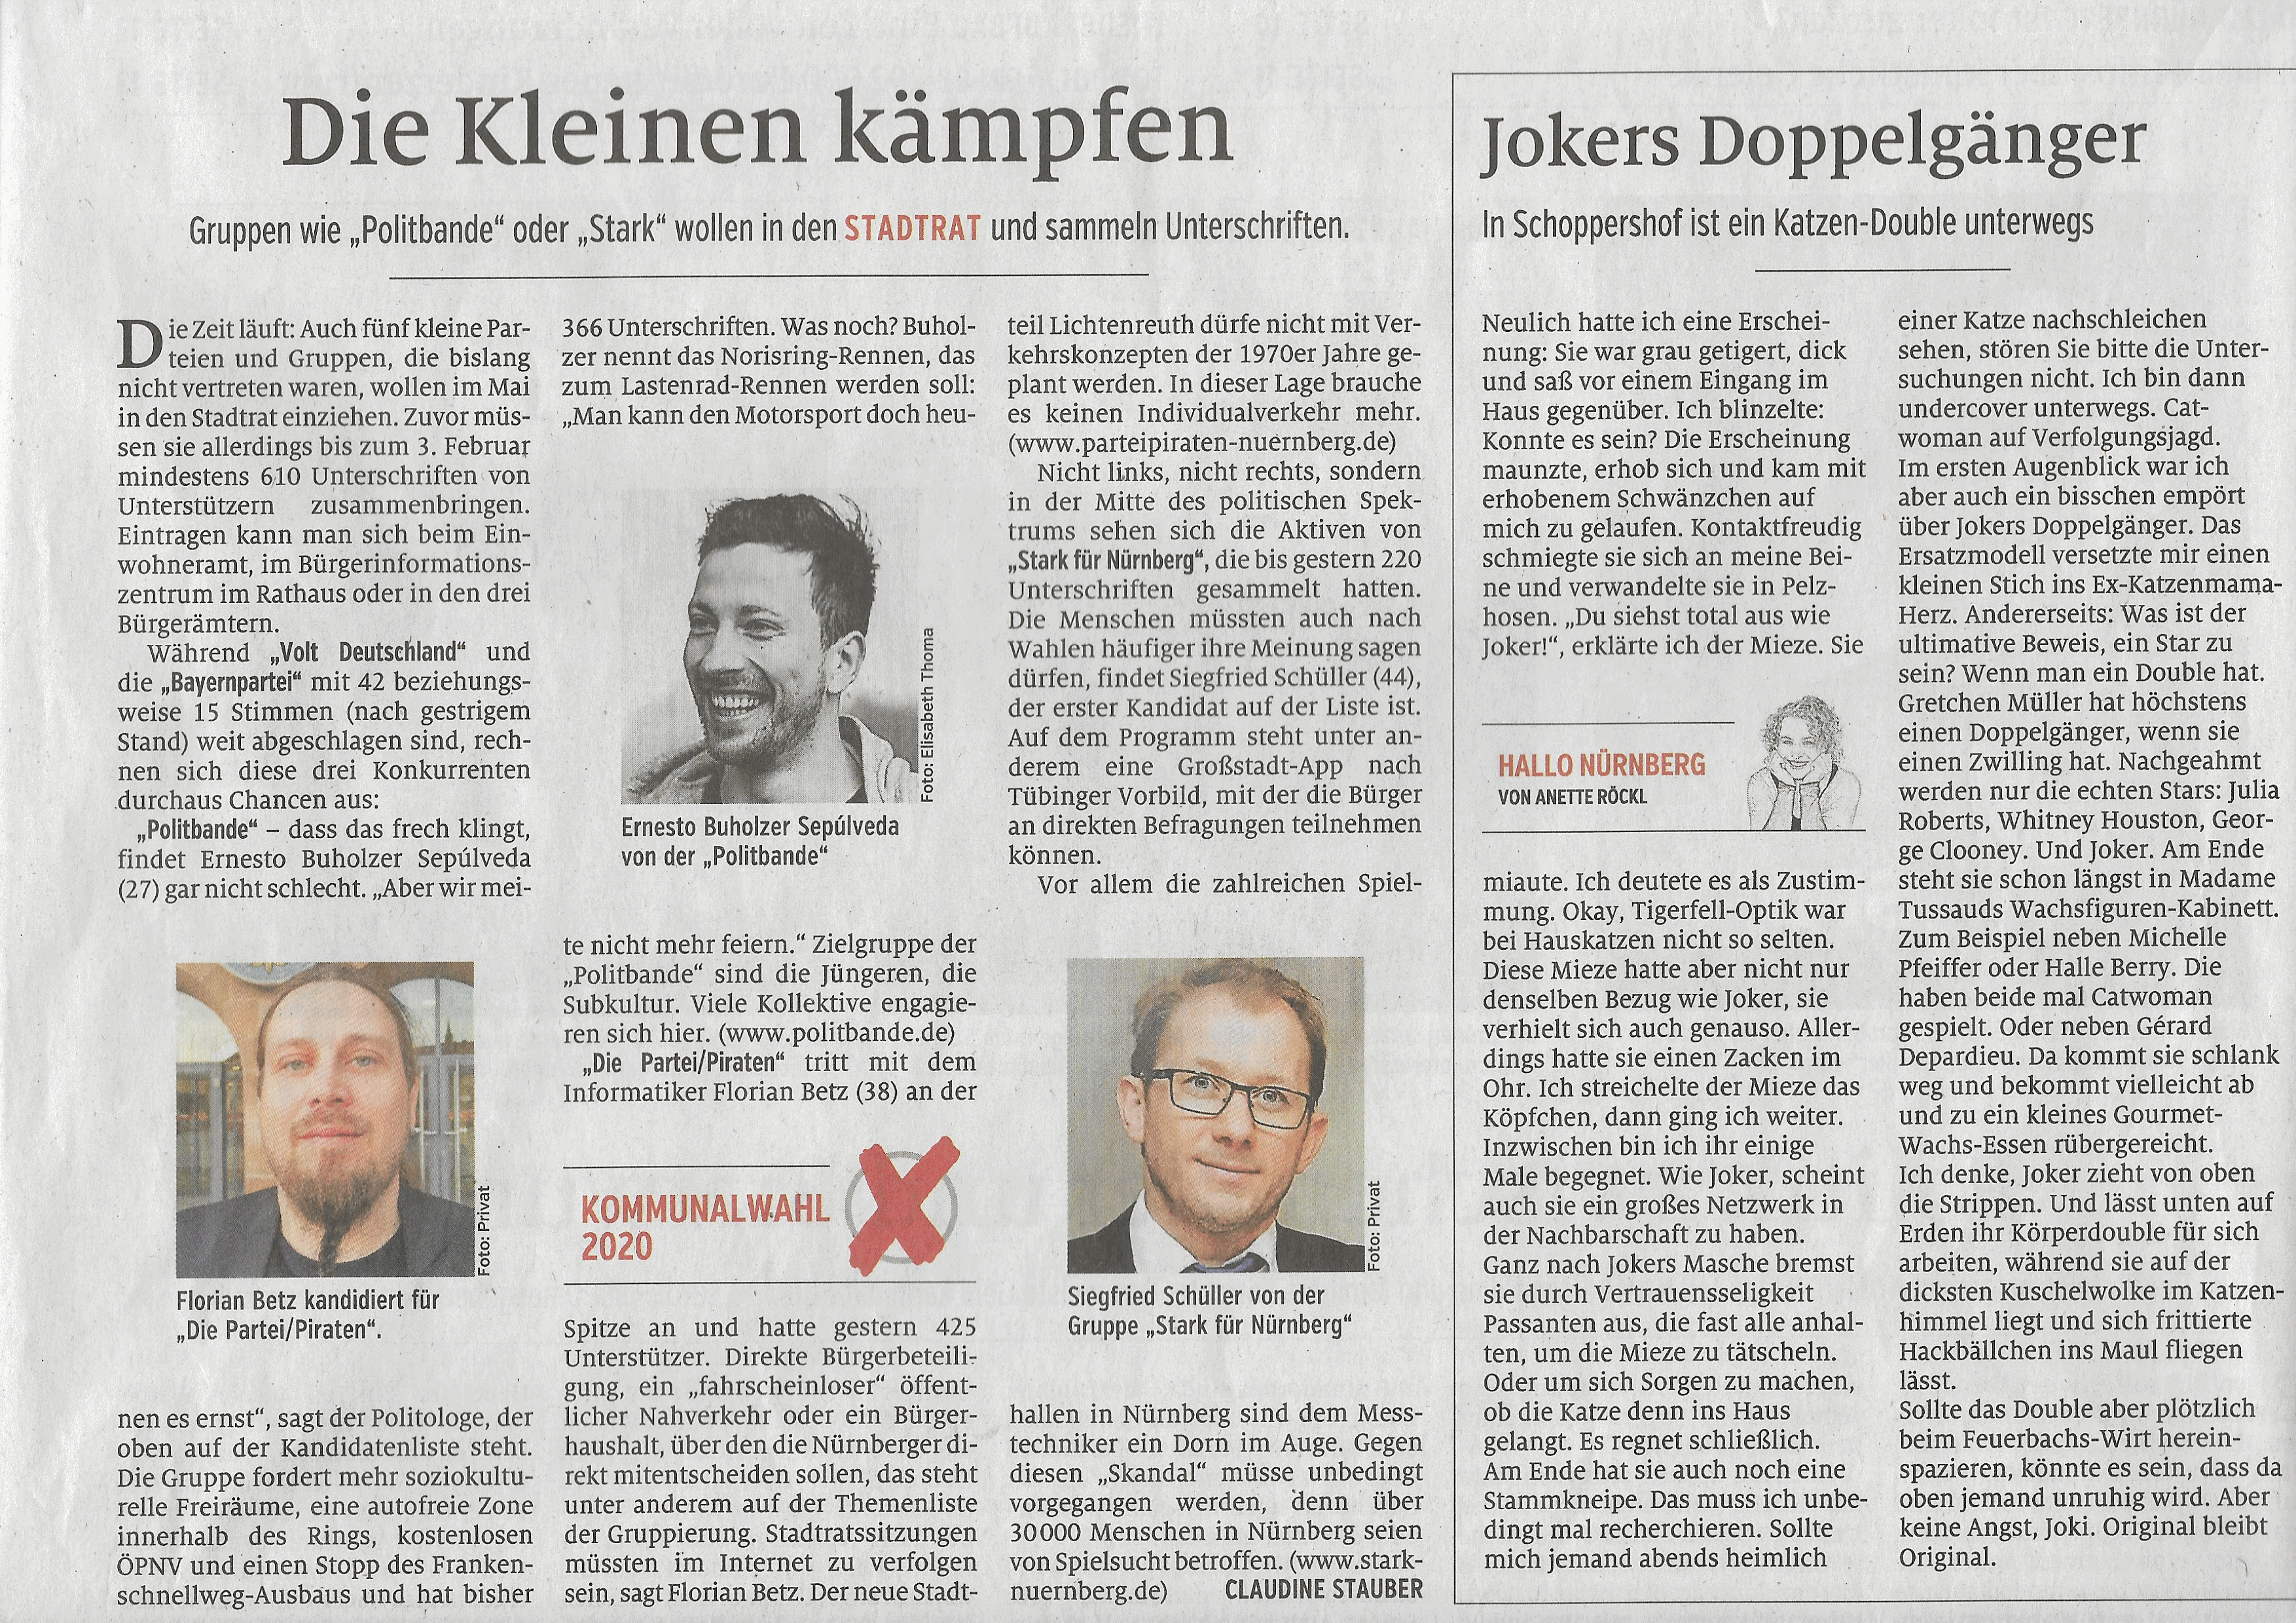 Nürnberger Nachrichten, Bericht vom 18 Januar 2020, Siegfried Schüller, STARK